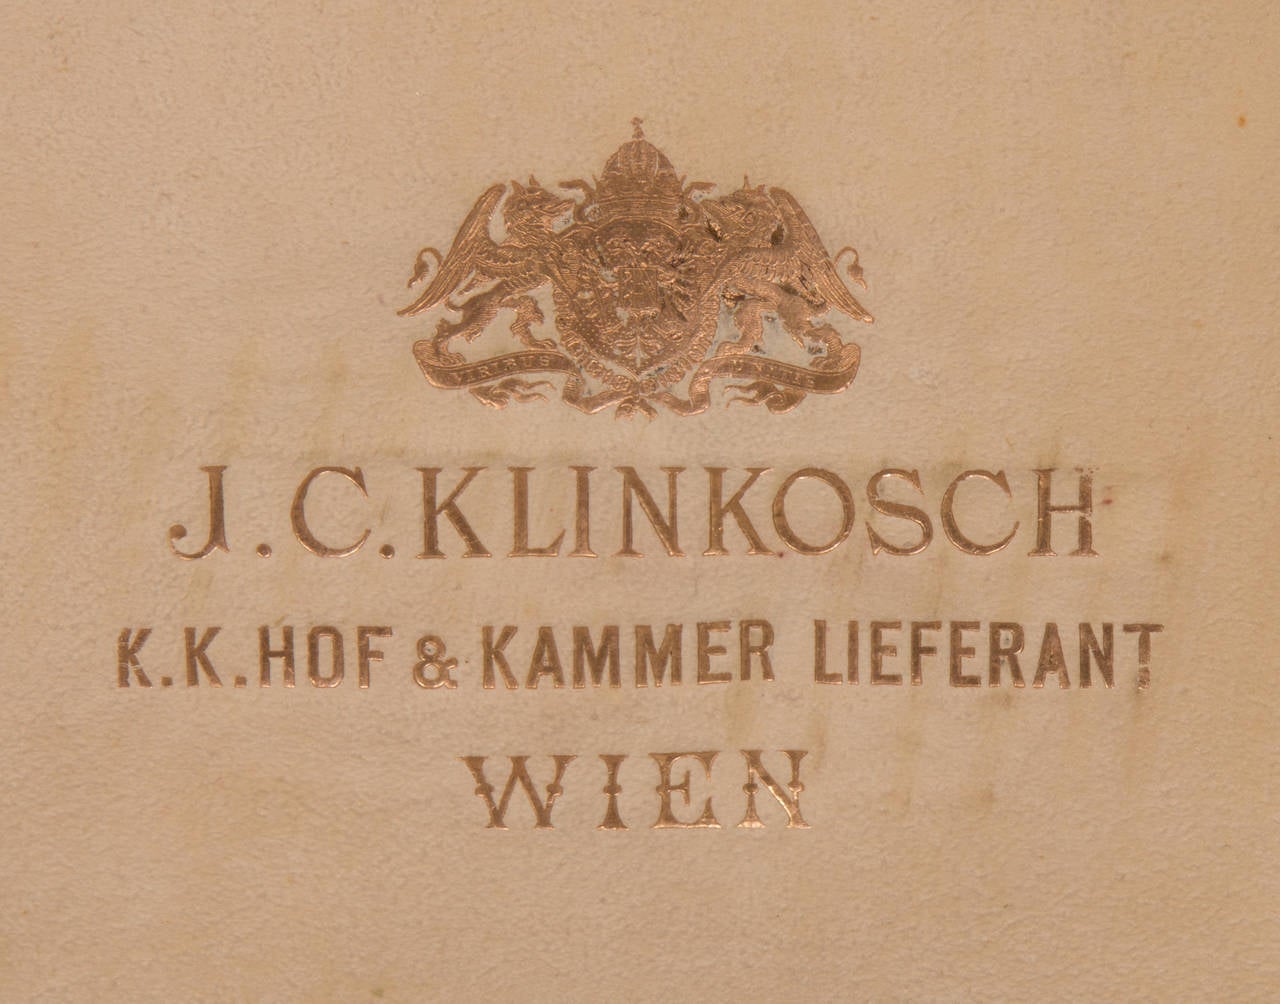 19th Century Flatware Service for 12 by Joseph Carl Klinkosch, Vienna